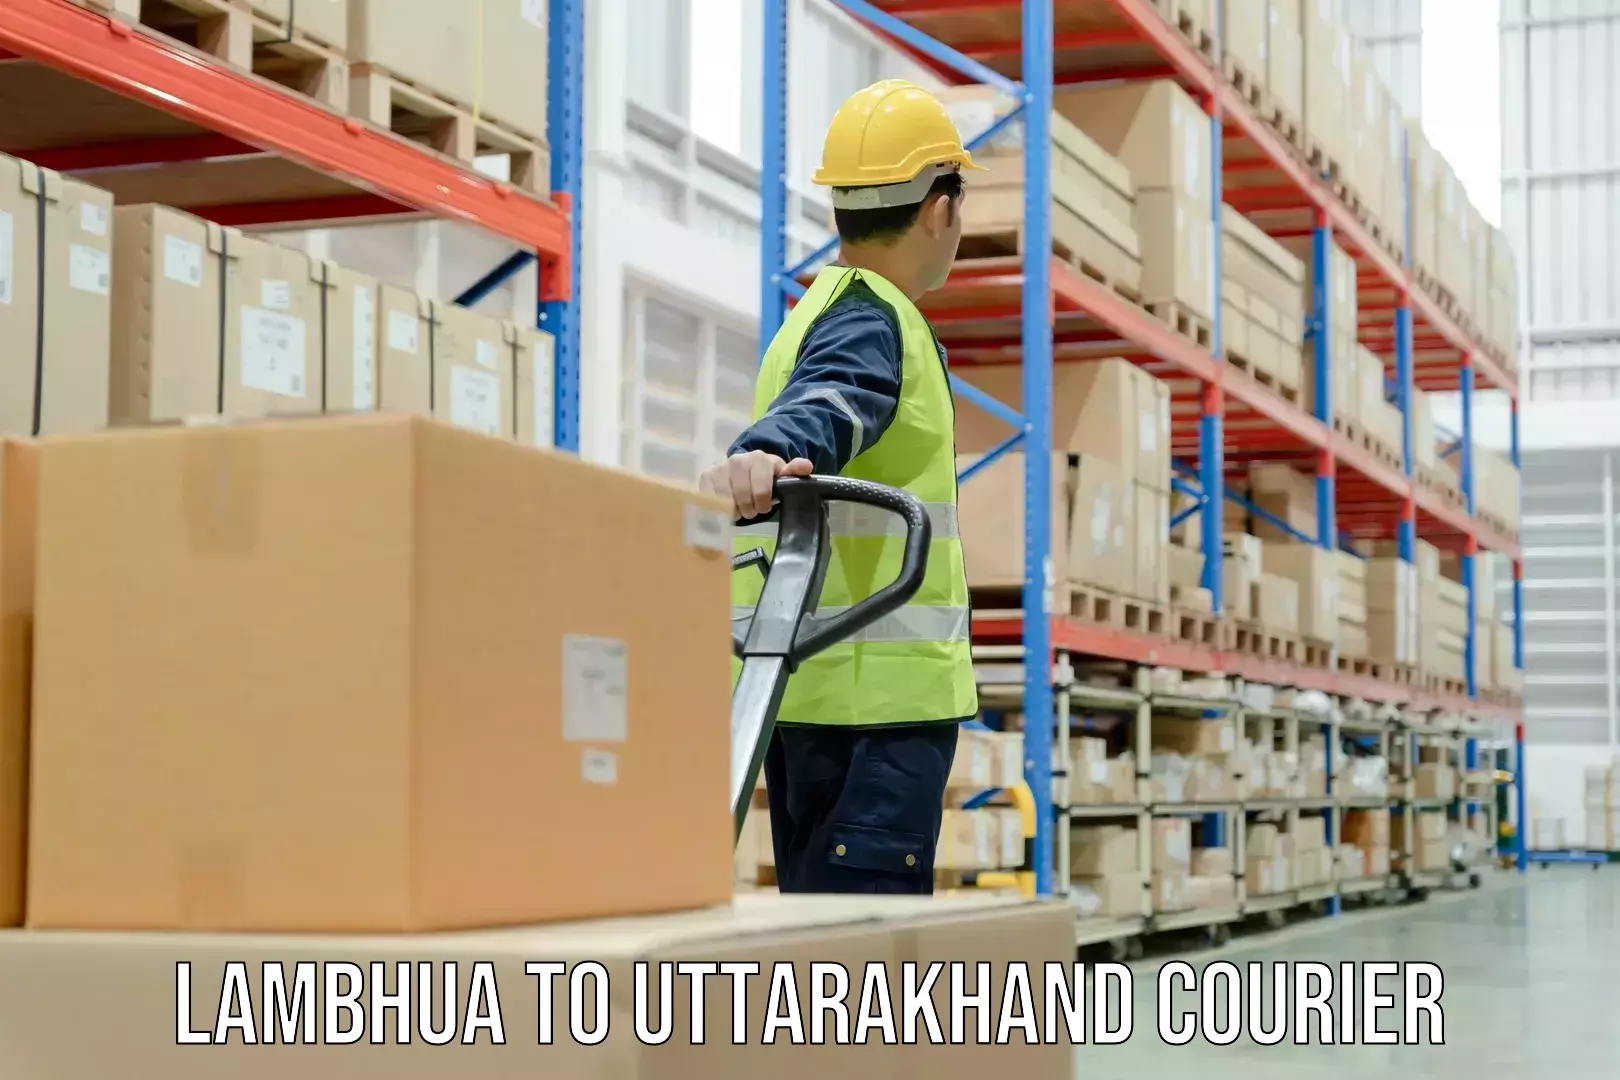 Online courier booking Lambhua to Uttarakhand